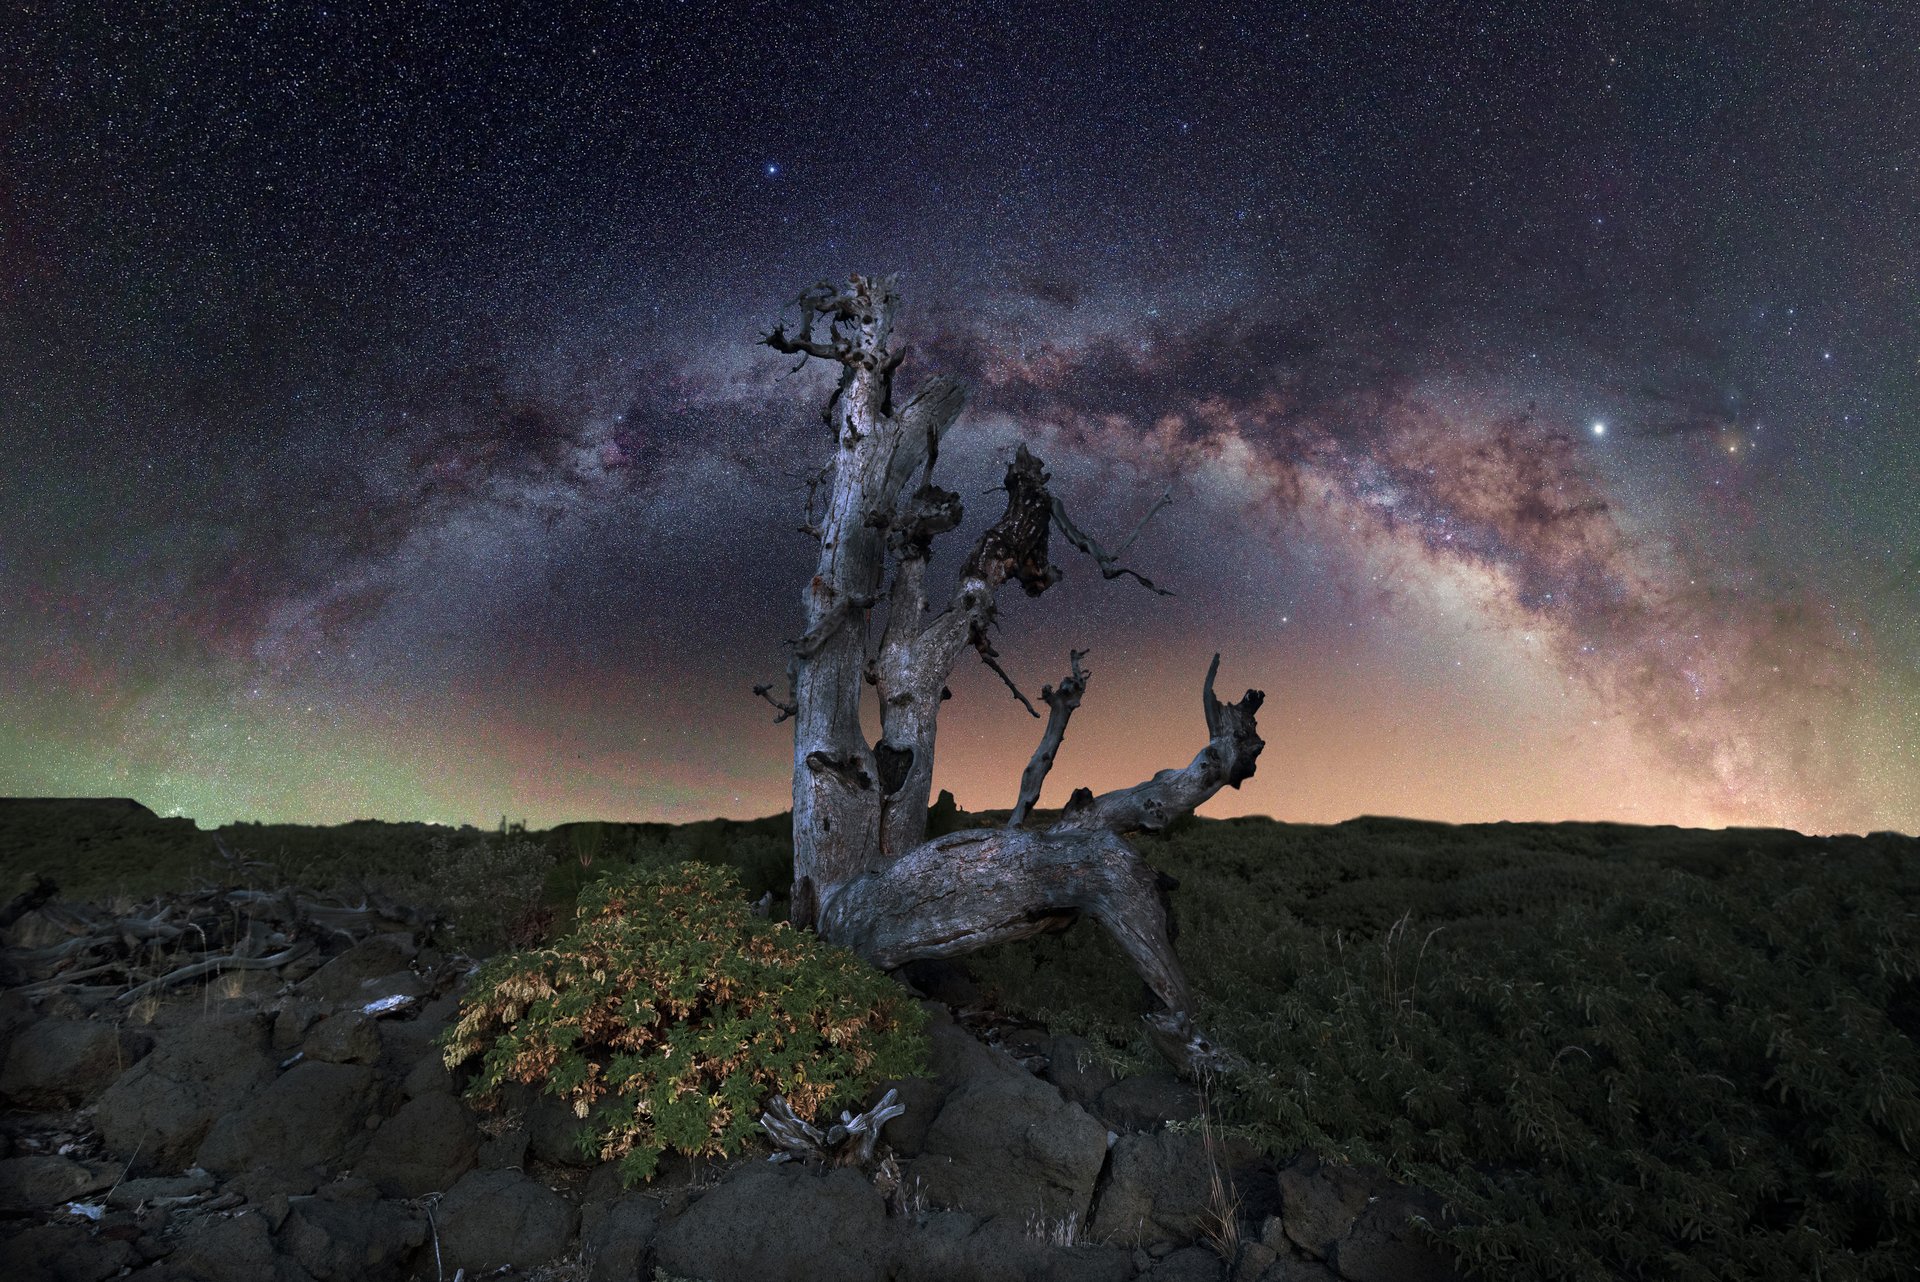 Im Vordergrund ist ein karger Baum, über ihm am Nachthimmel spannt sich ein bogenförmiger Sternnebel.